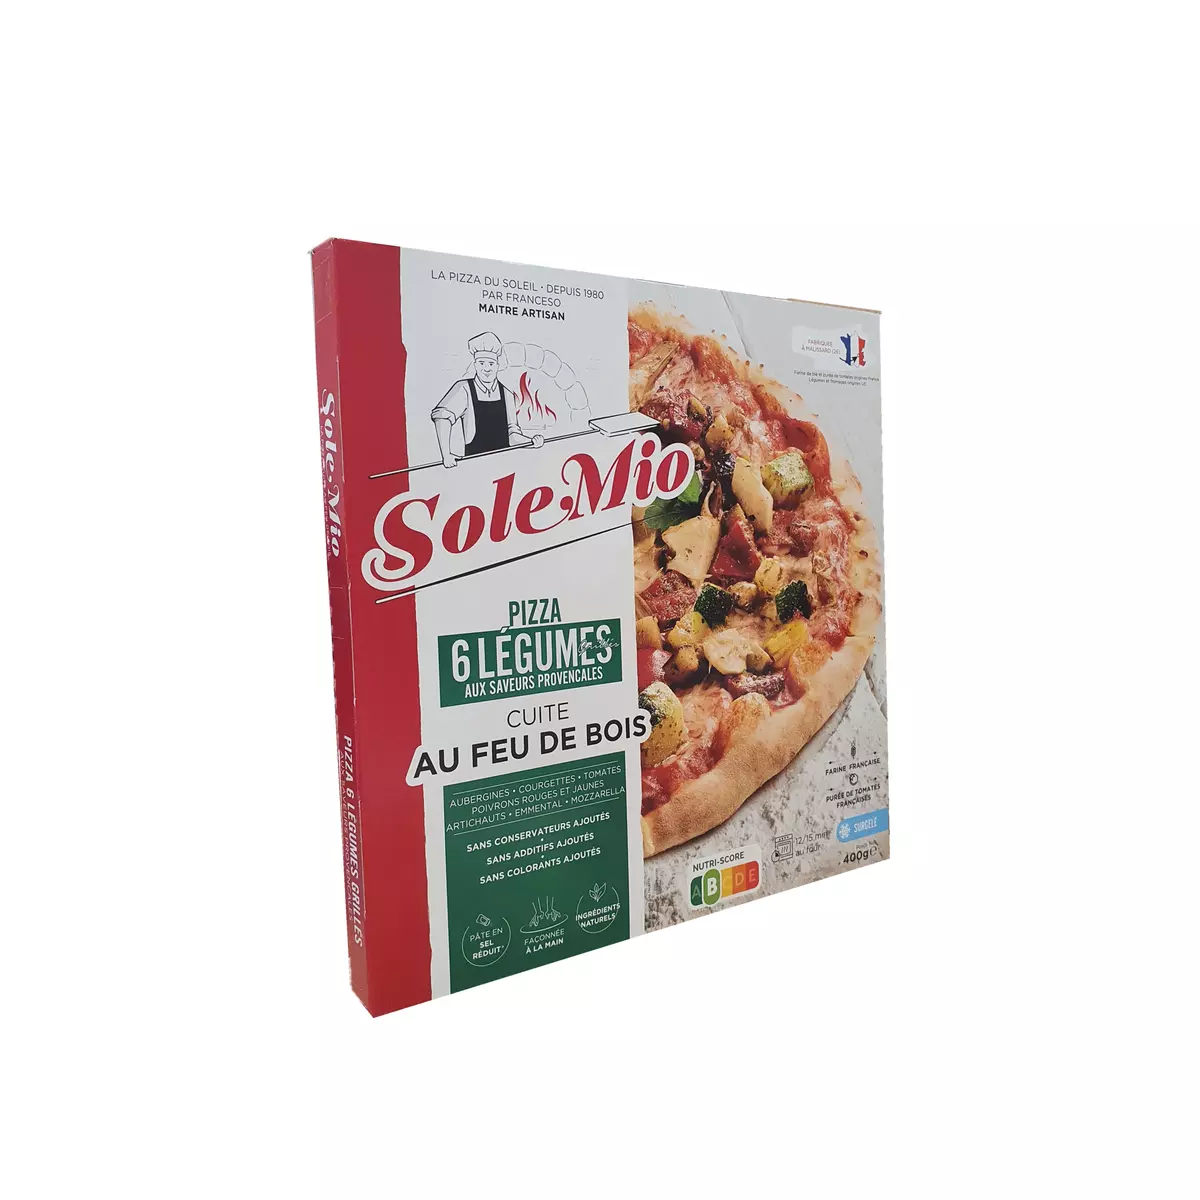 SOLE MIO Pizza aux 6 légumes saveur provençale cuite au feu de bois 400g